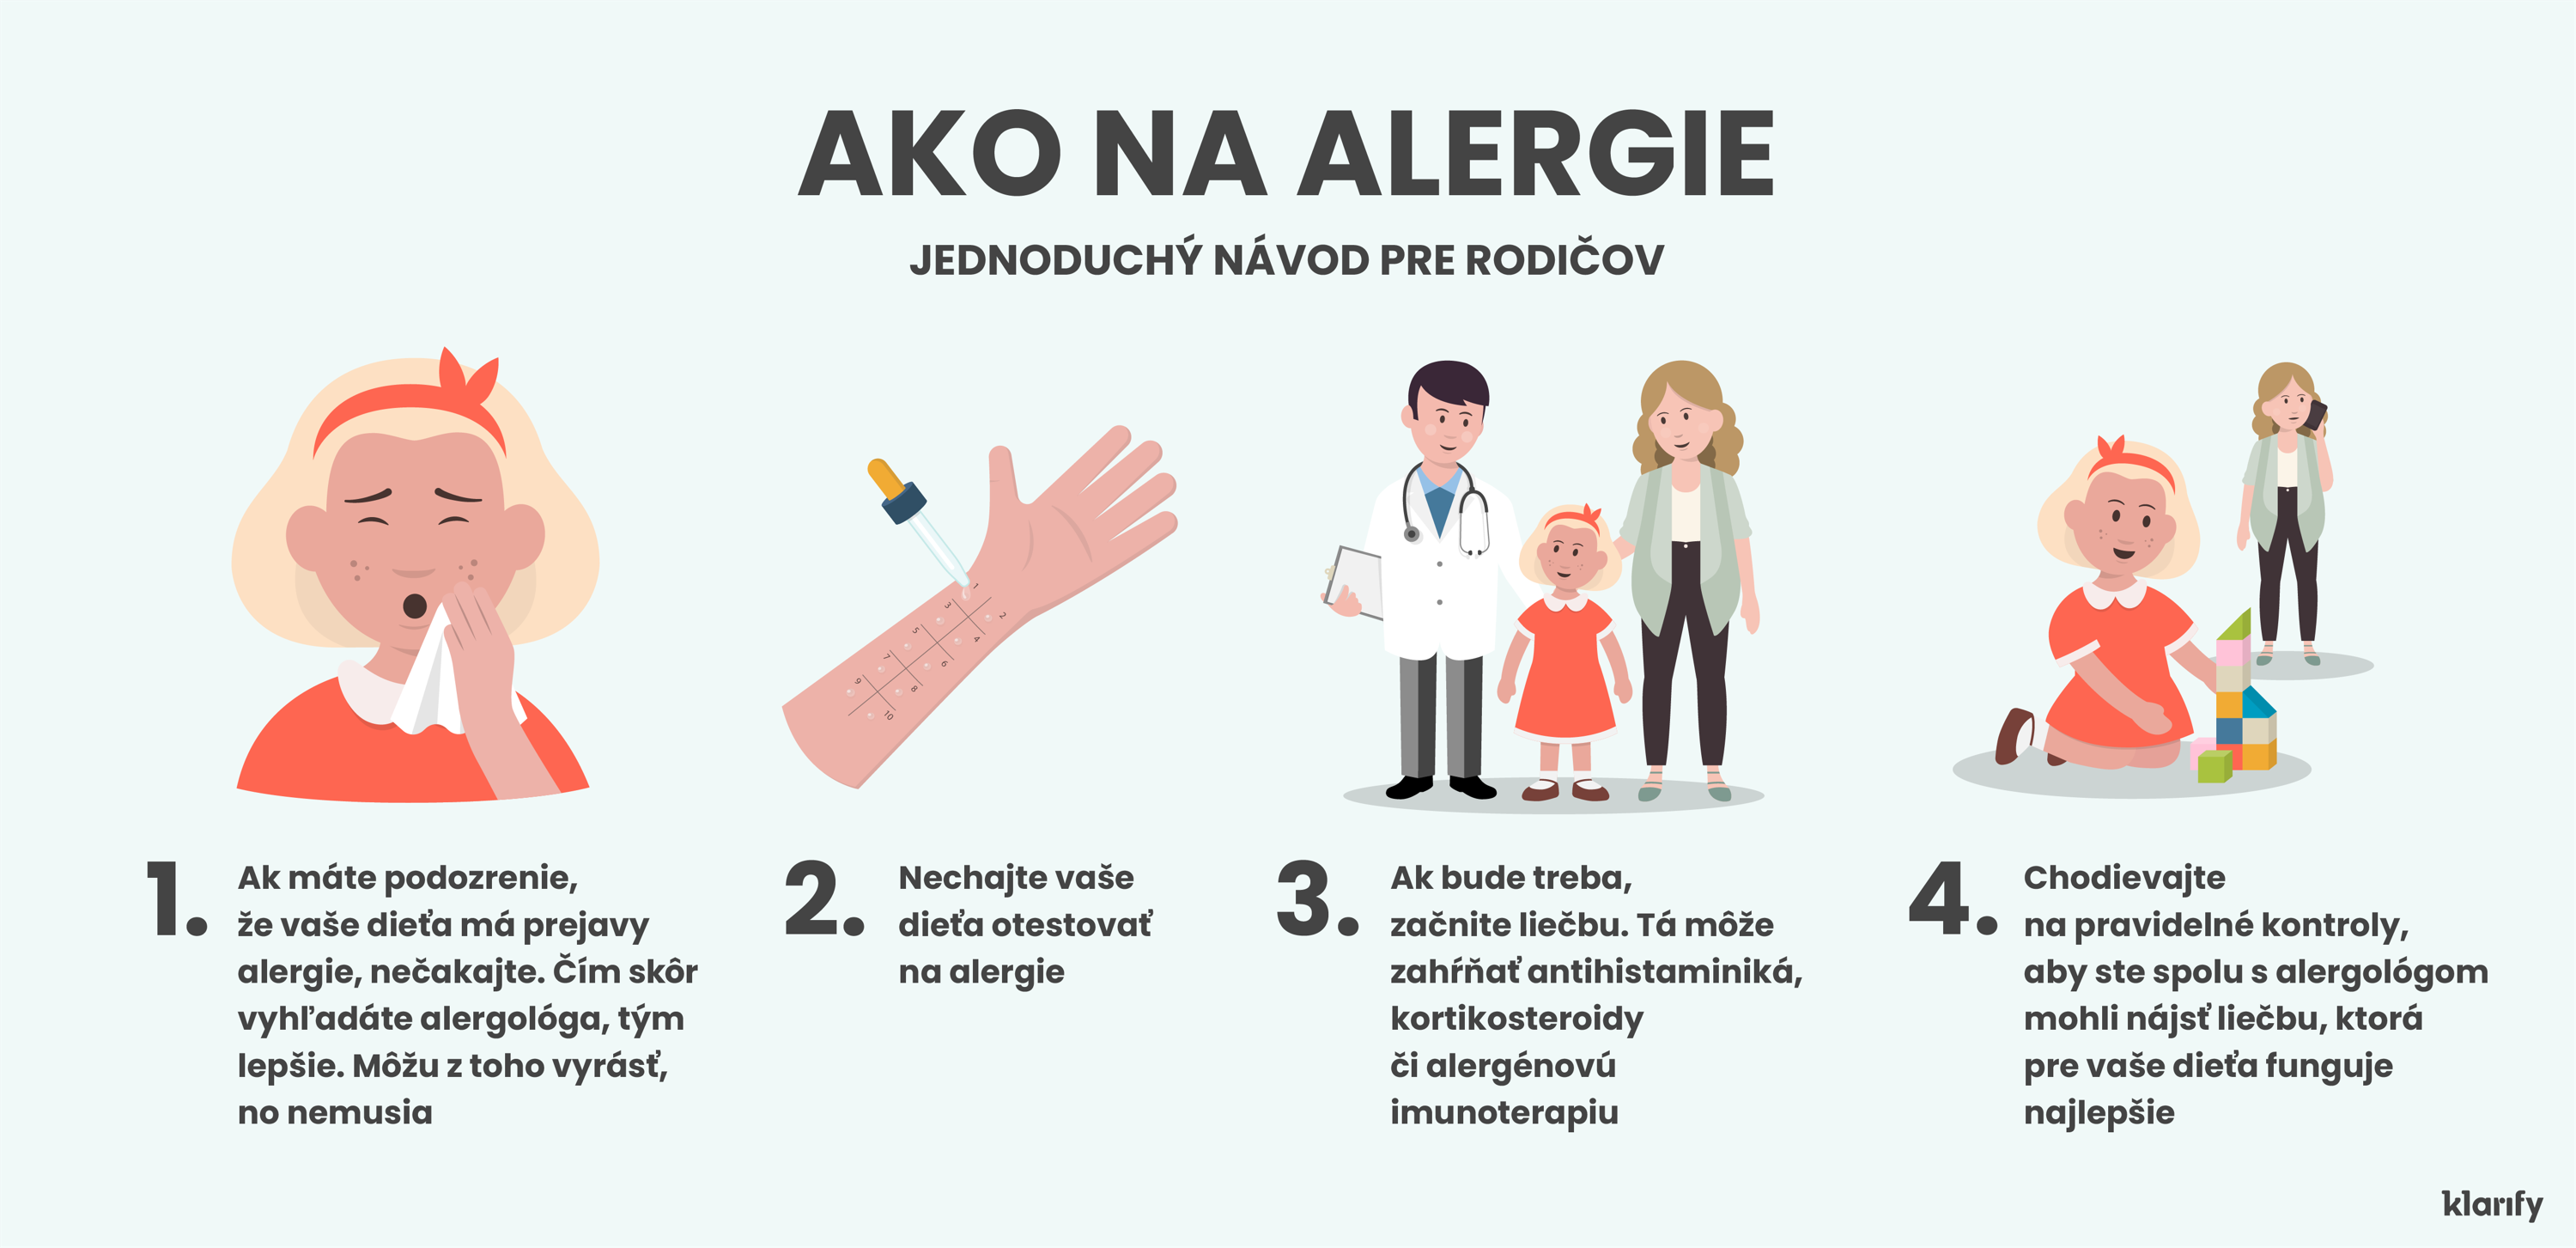 Infografika popisujúca, ako deti s príznakmi alergie získavajú diagnózu a dostávajú vhodnú liečbu. Detaily infografiky sú uvedené nižšie.